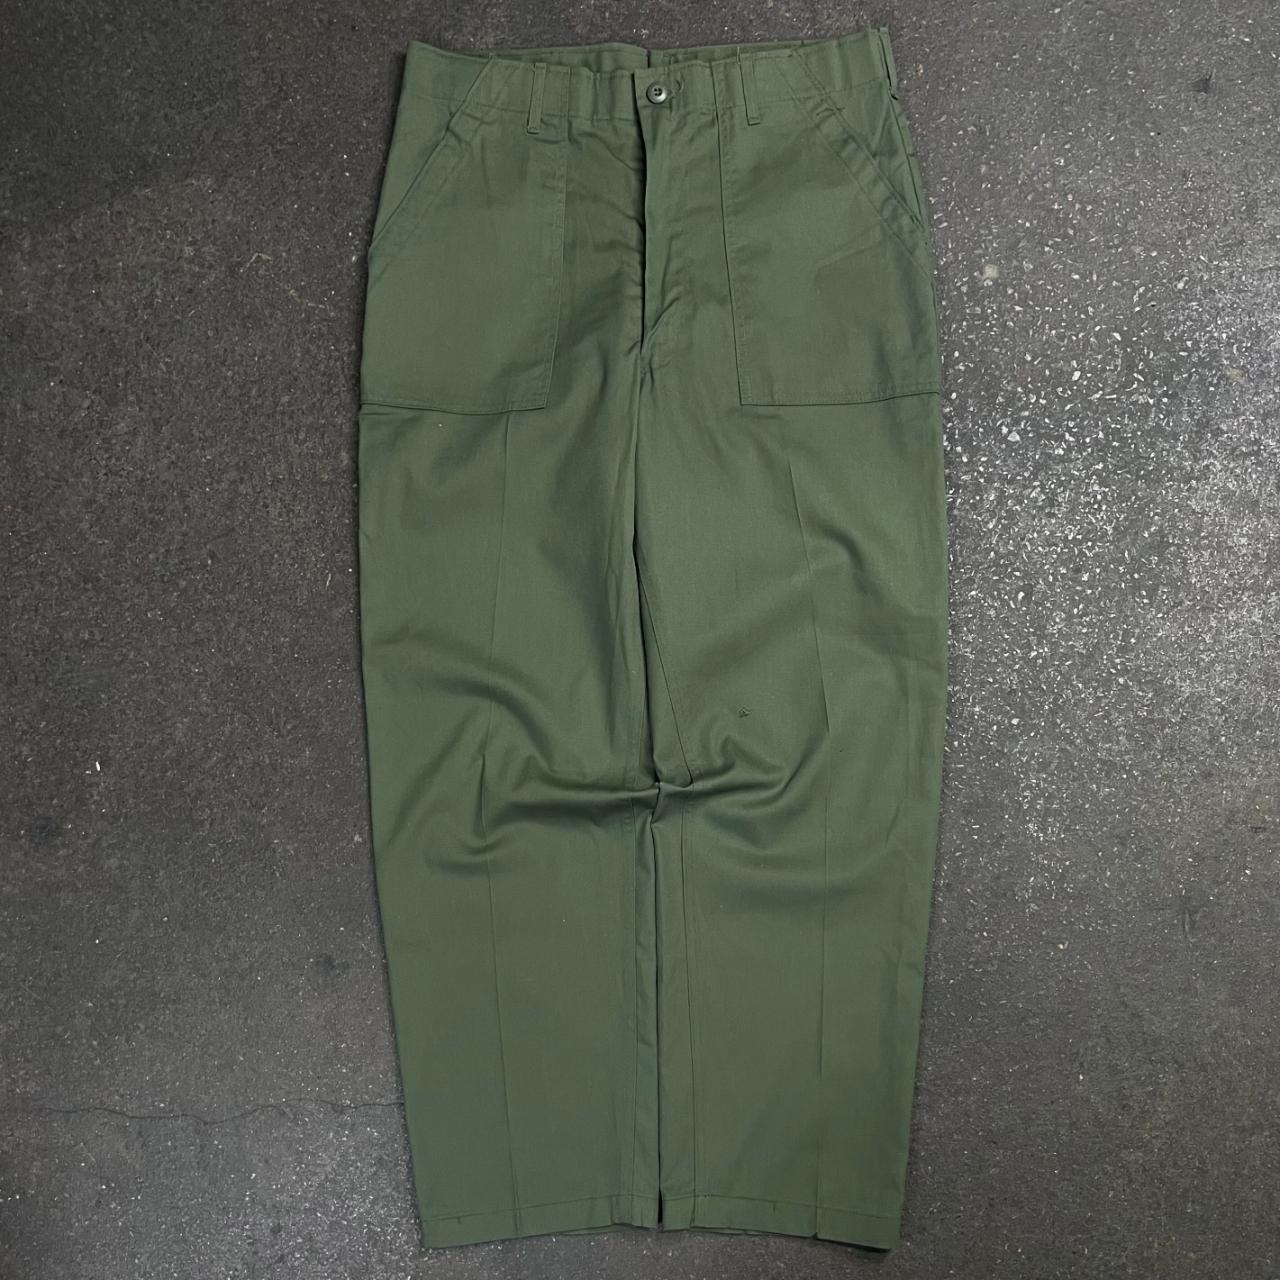 Vintage OG507 military pants 1980s OG-507 US army - Depop